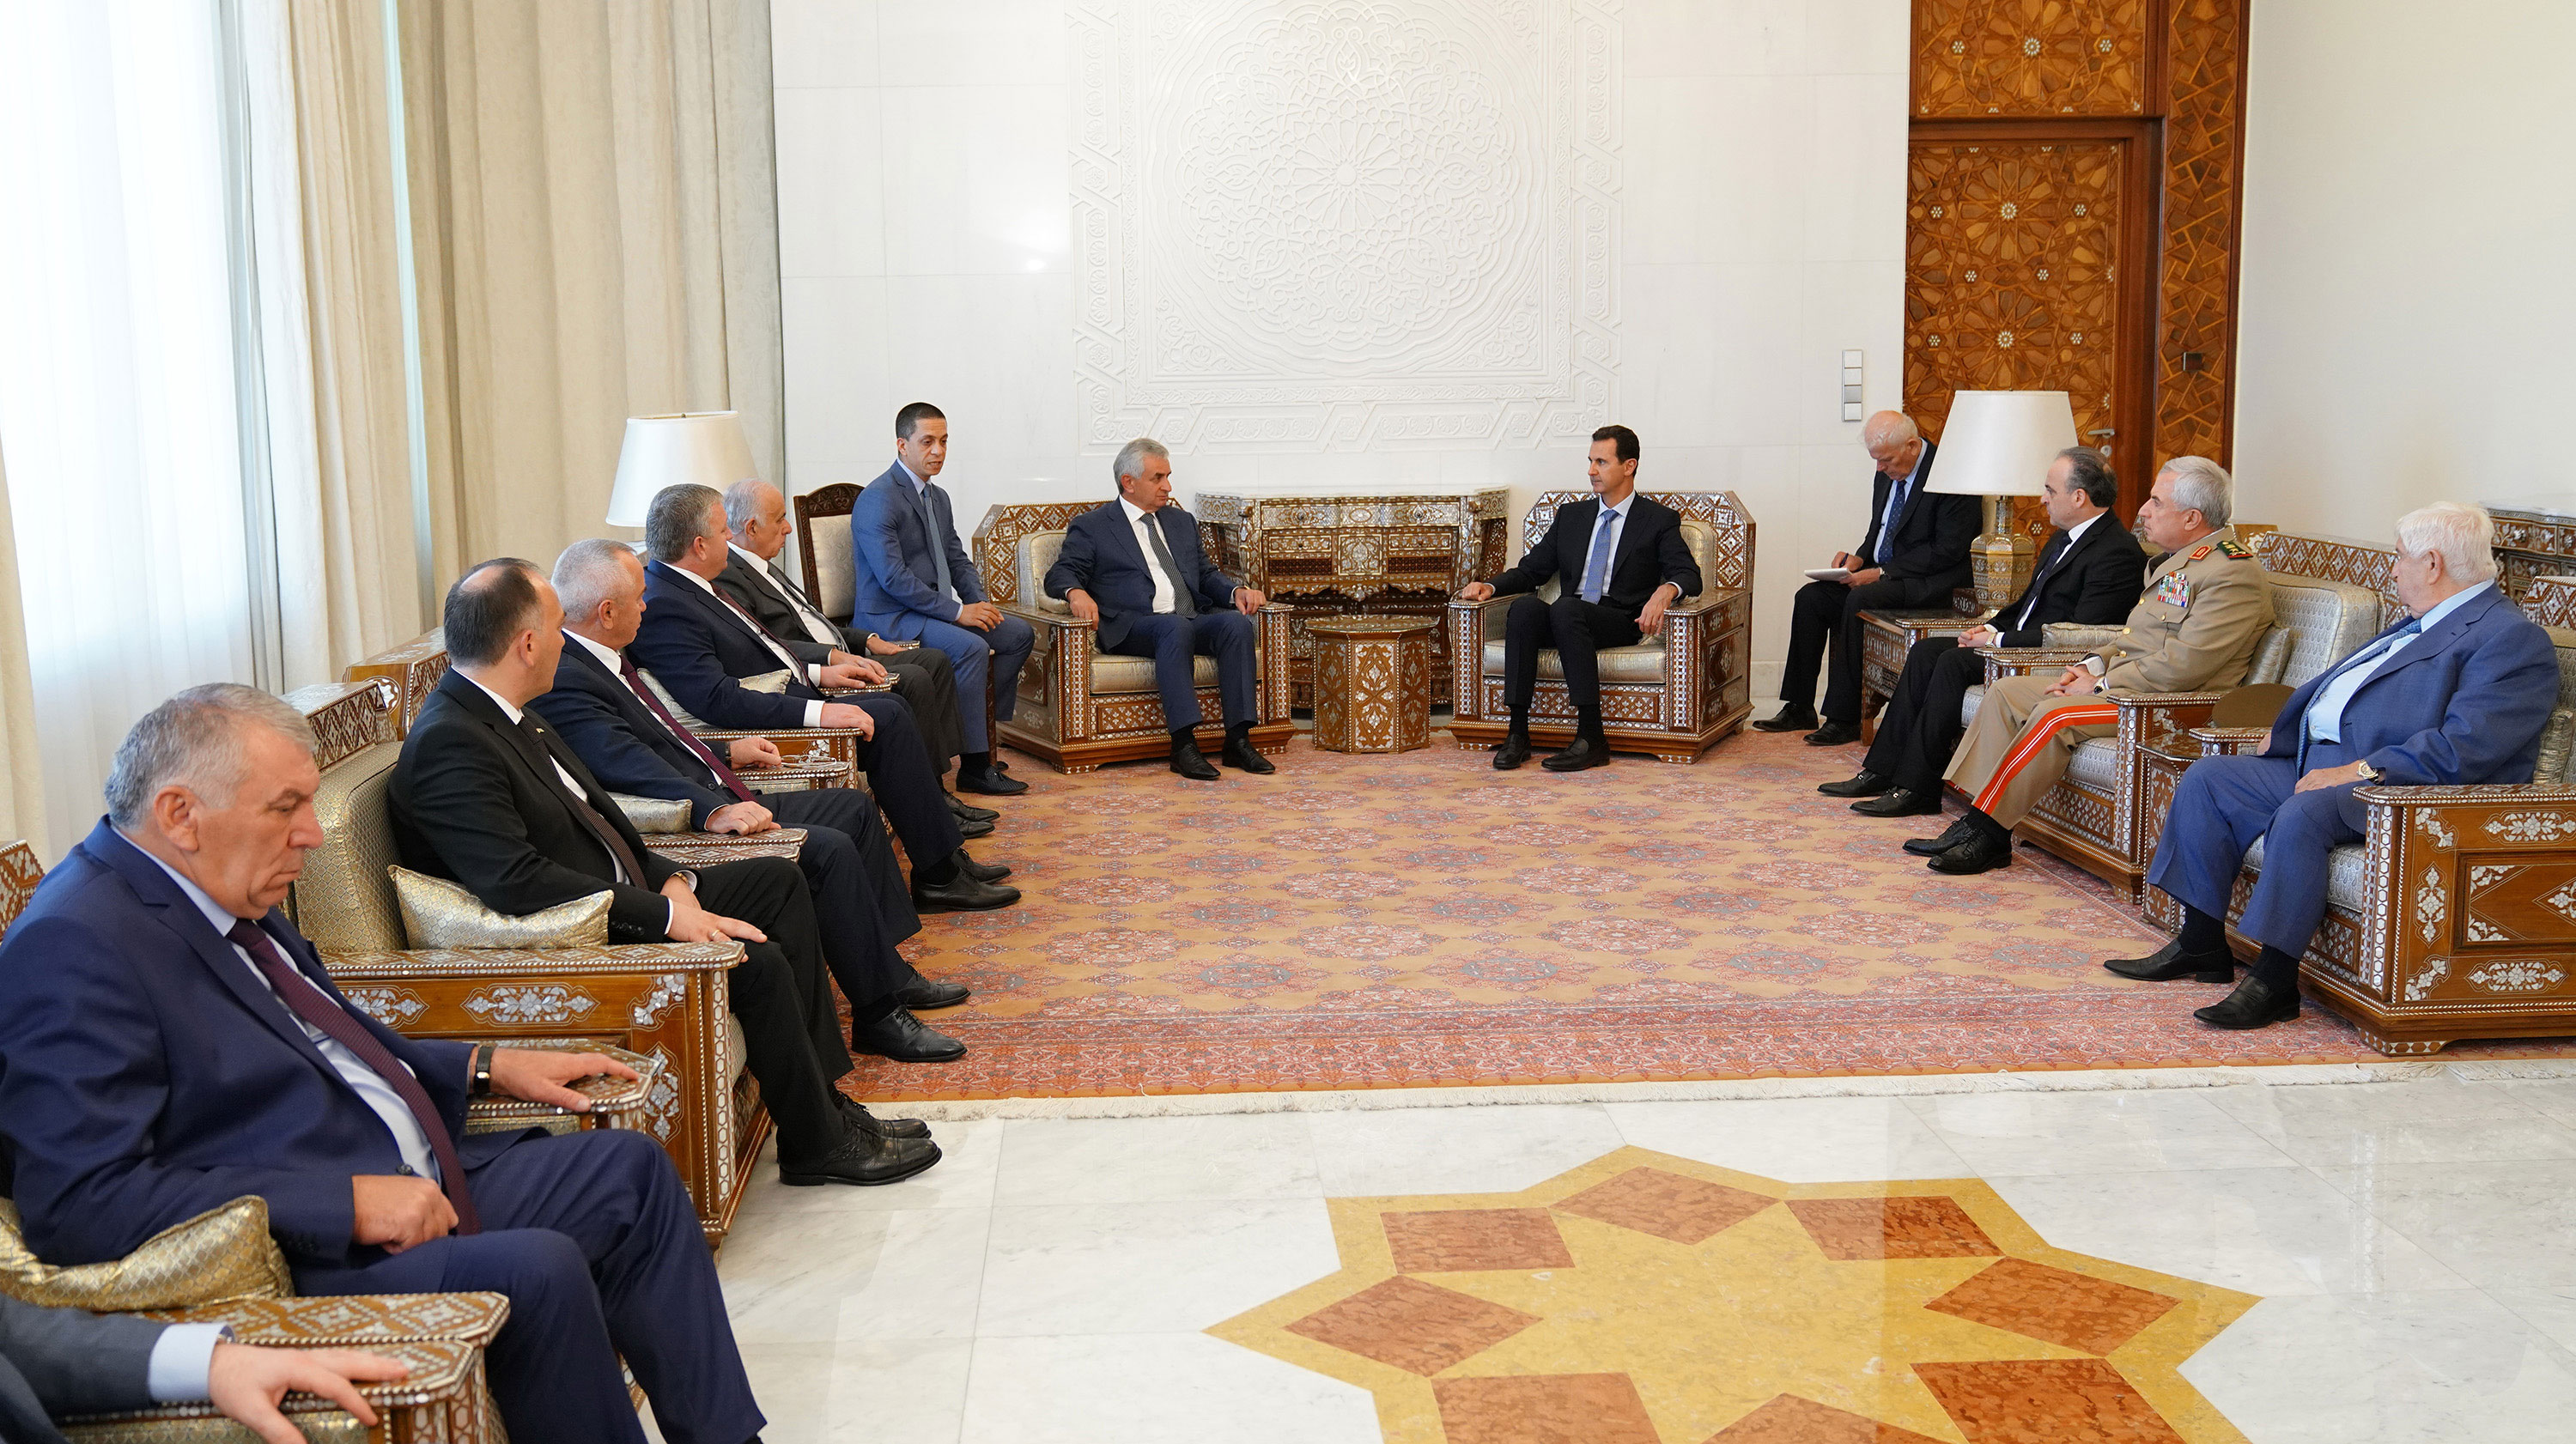  رئیس جمهور آبخازیا با بشار اسد دیدار کرد